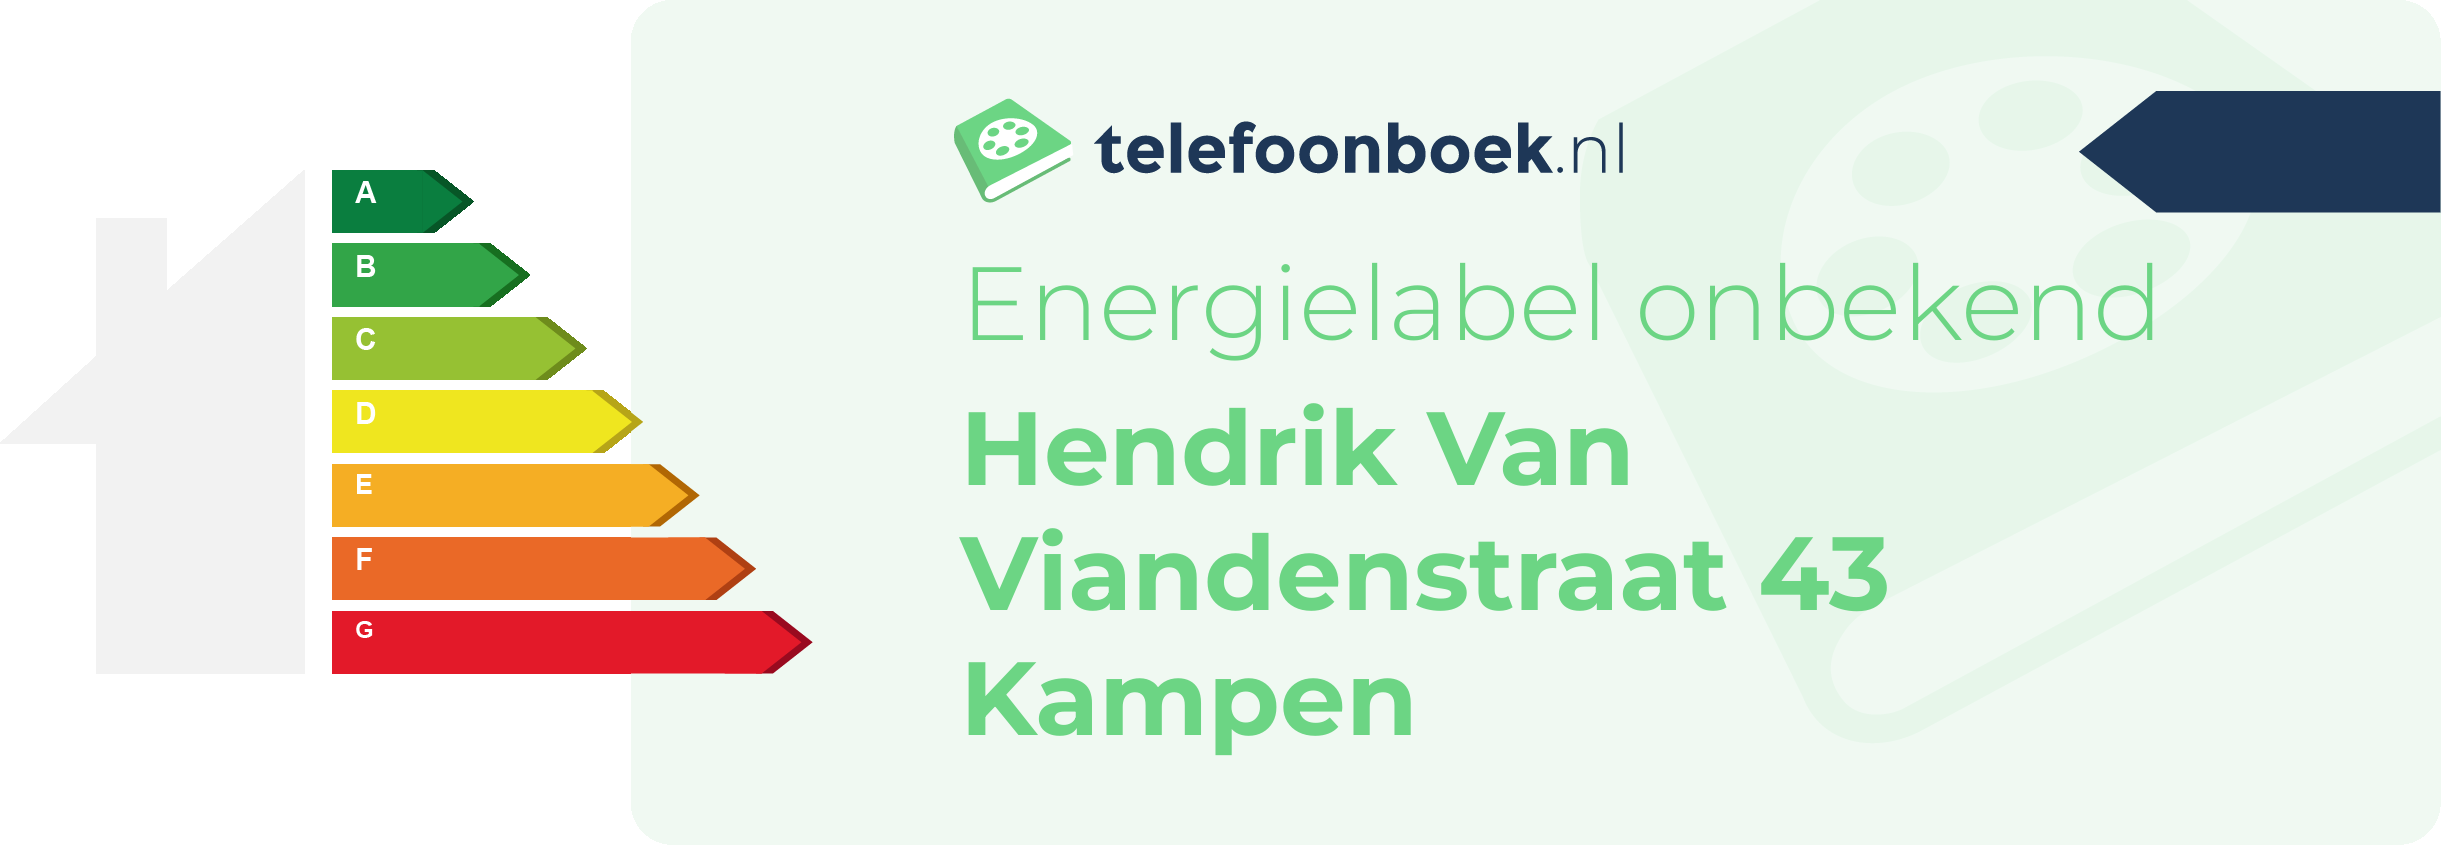 Energielabel Hendrik Van Viandenstraat 43 Kampen